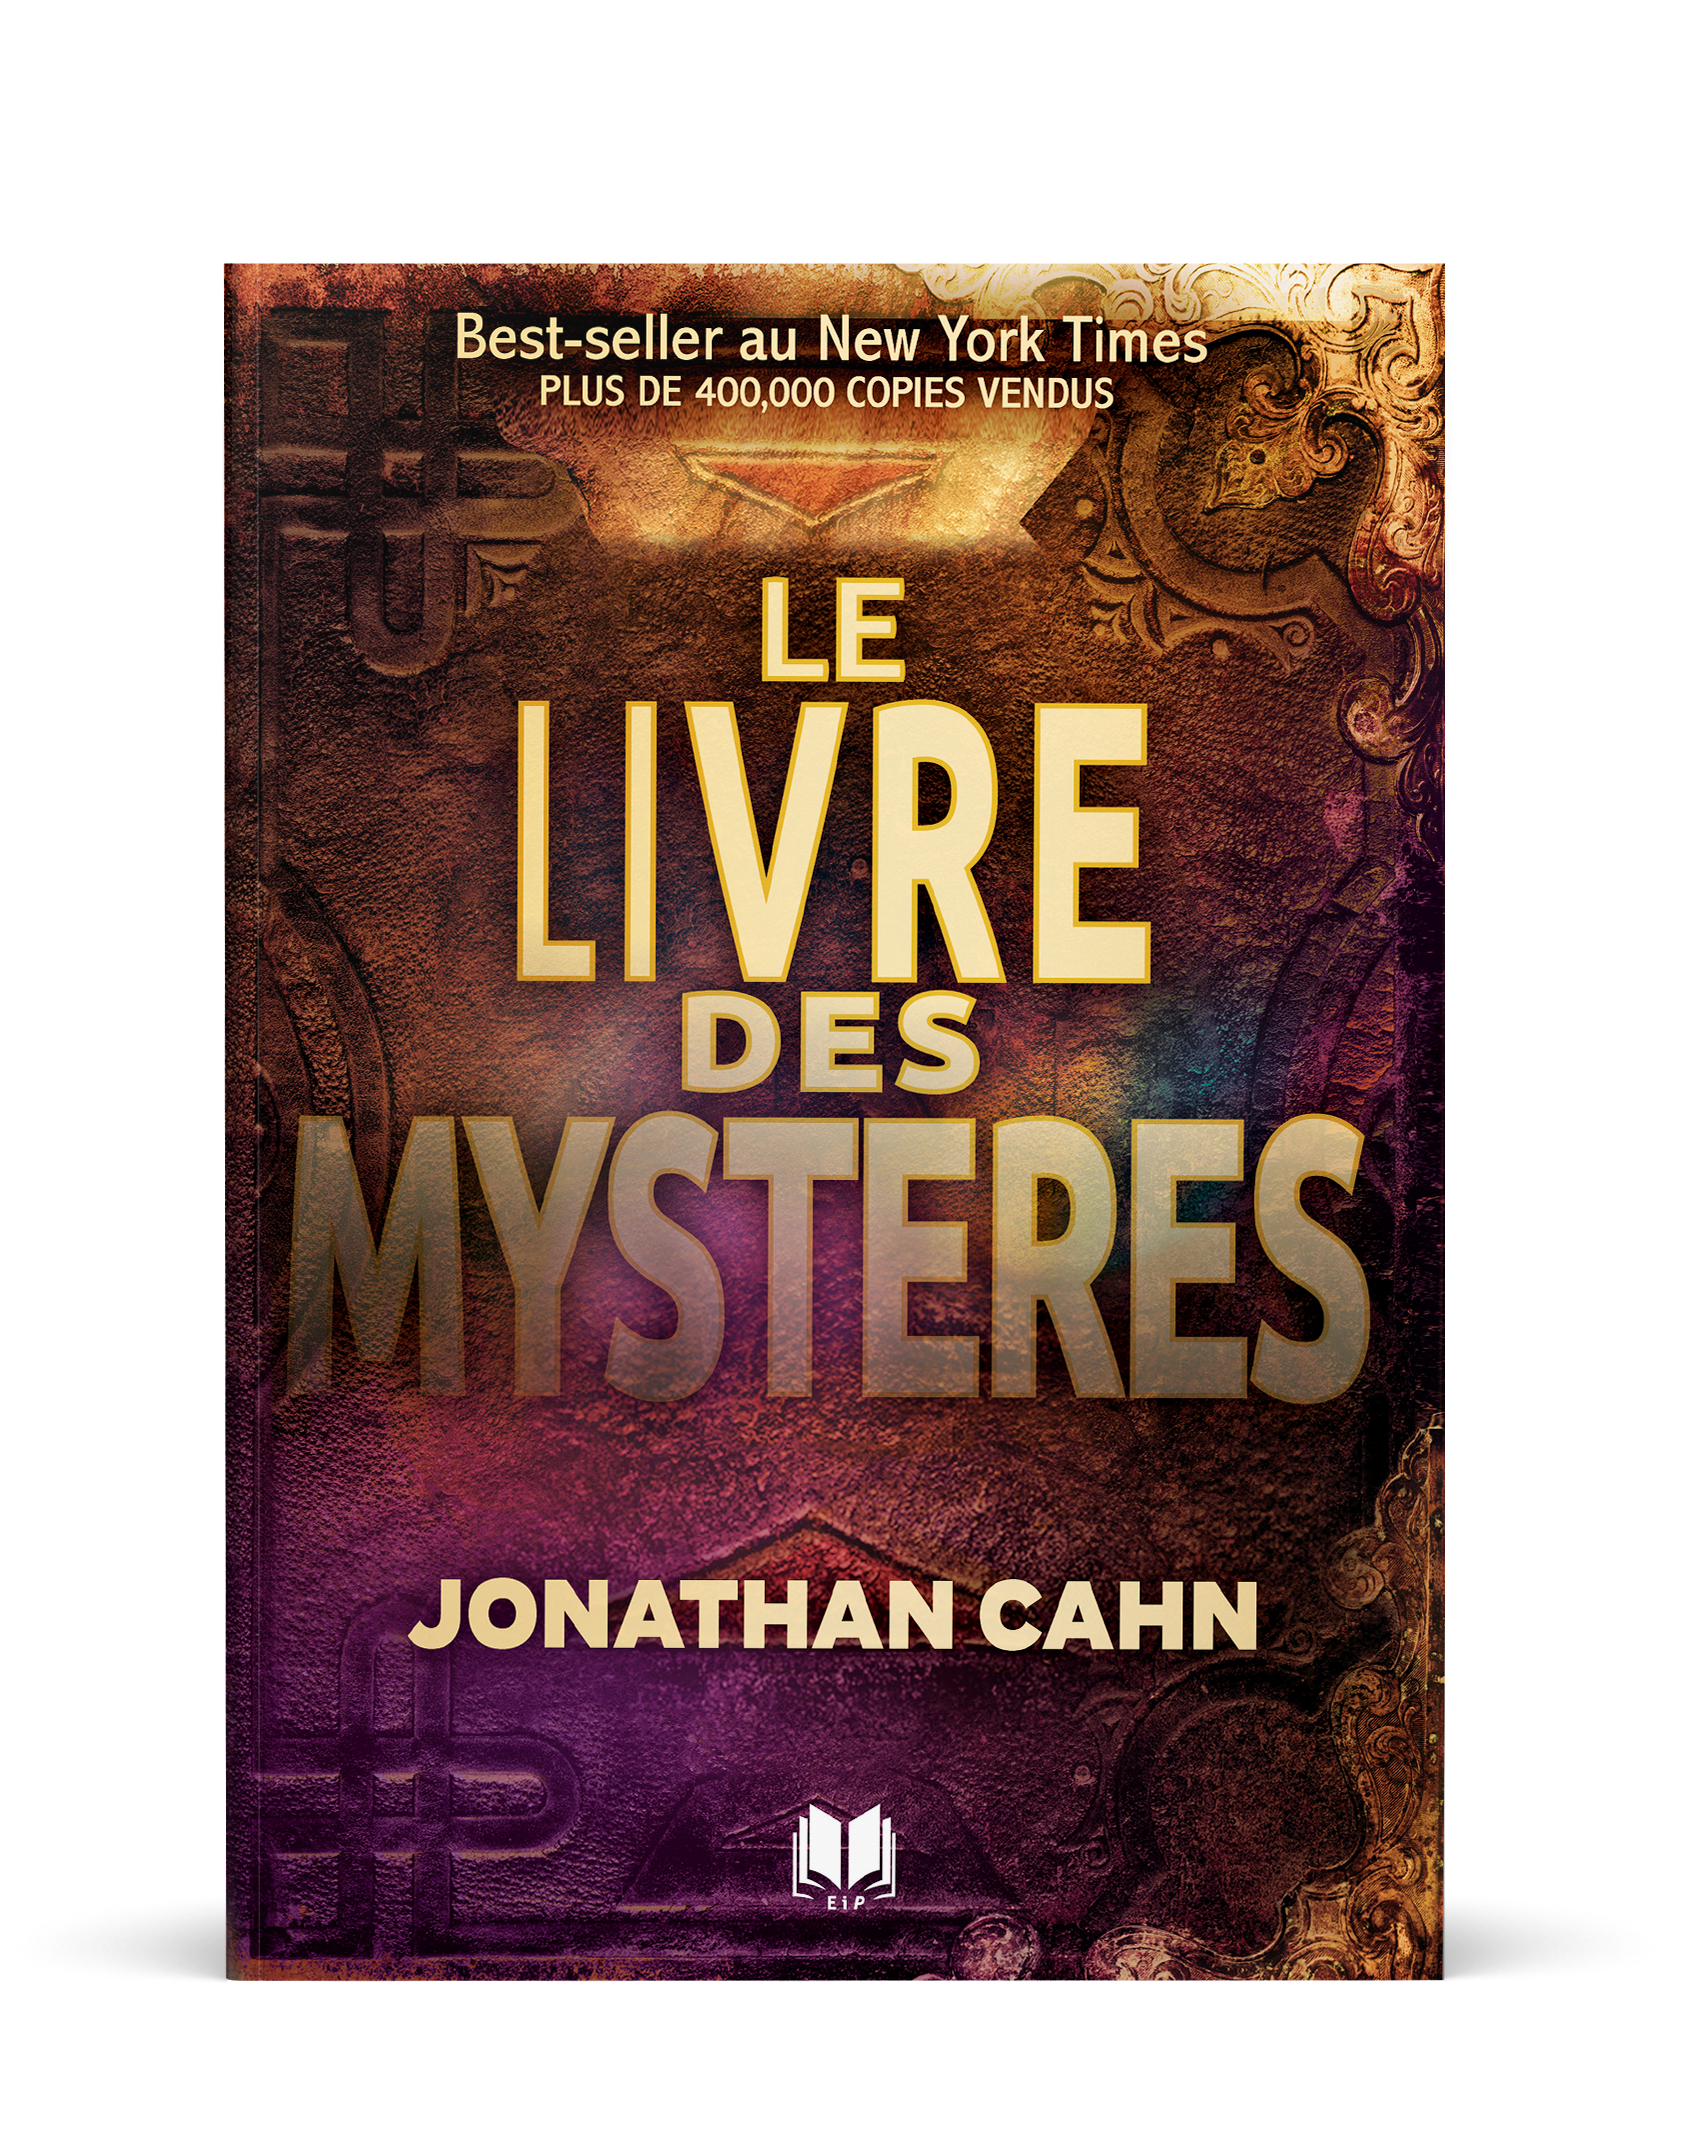 Le livre des mystères par Jonathan Cahn couverture recto